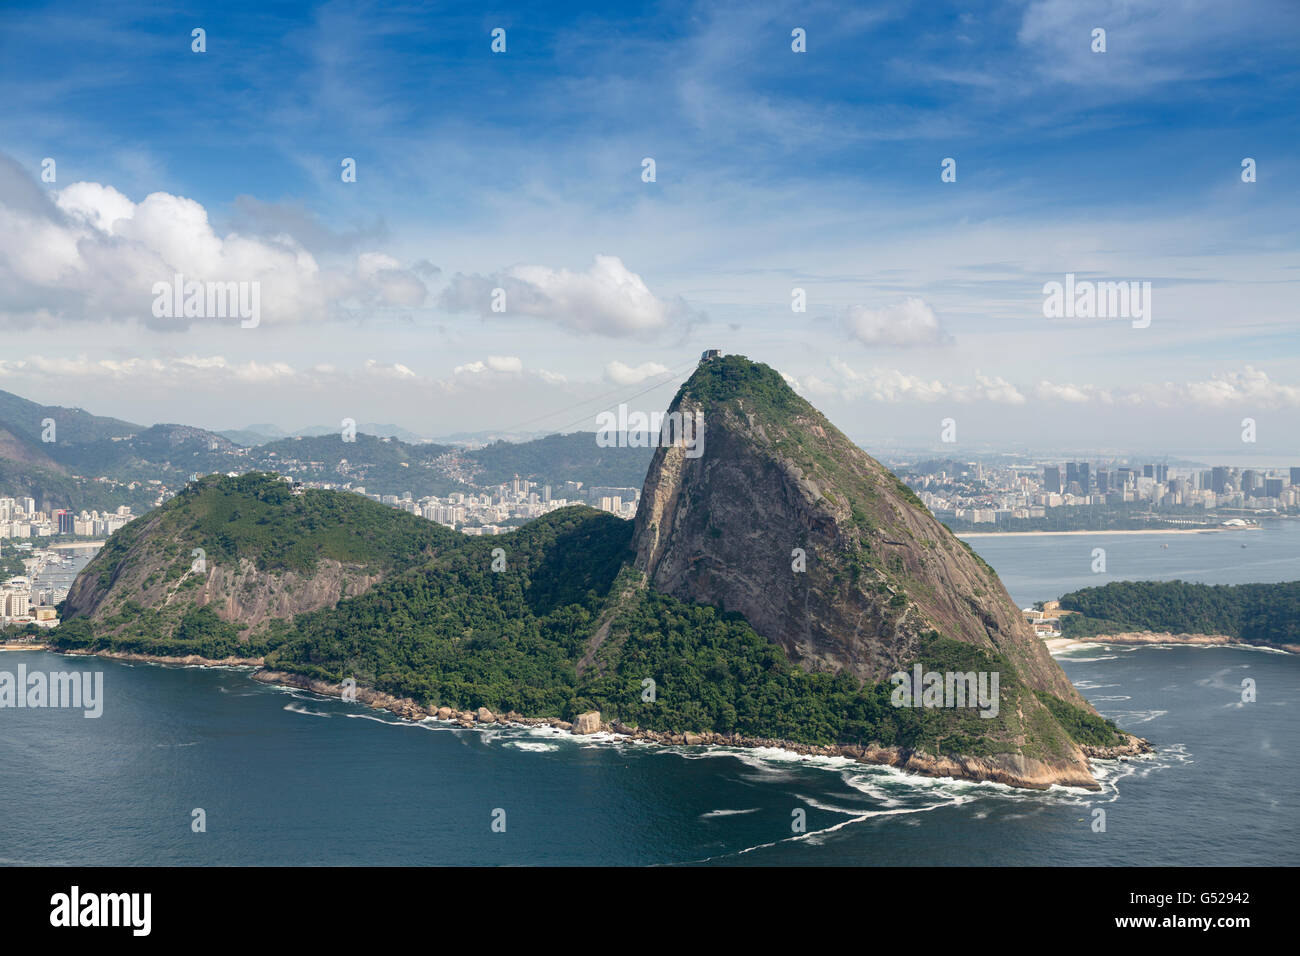 Vue aérienne de la baie de Guanabara, le pain de sucre et la ville de Rio de Janeiro Banque D'Images